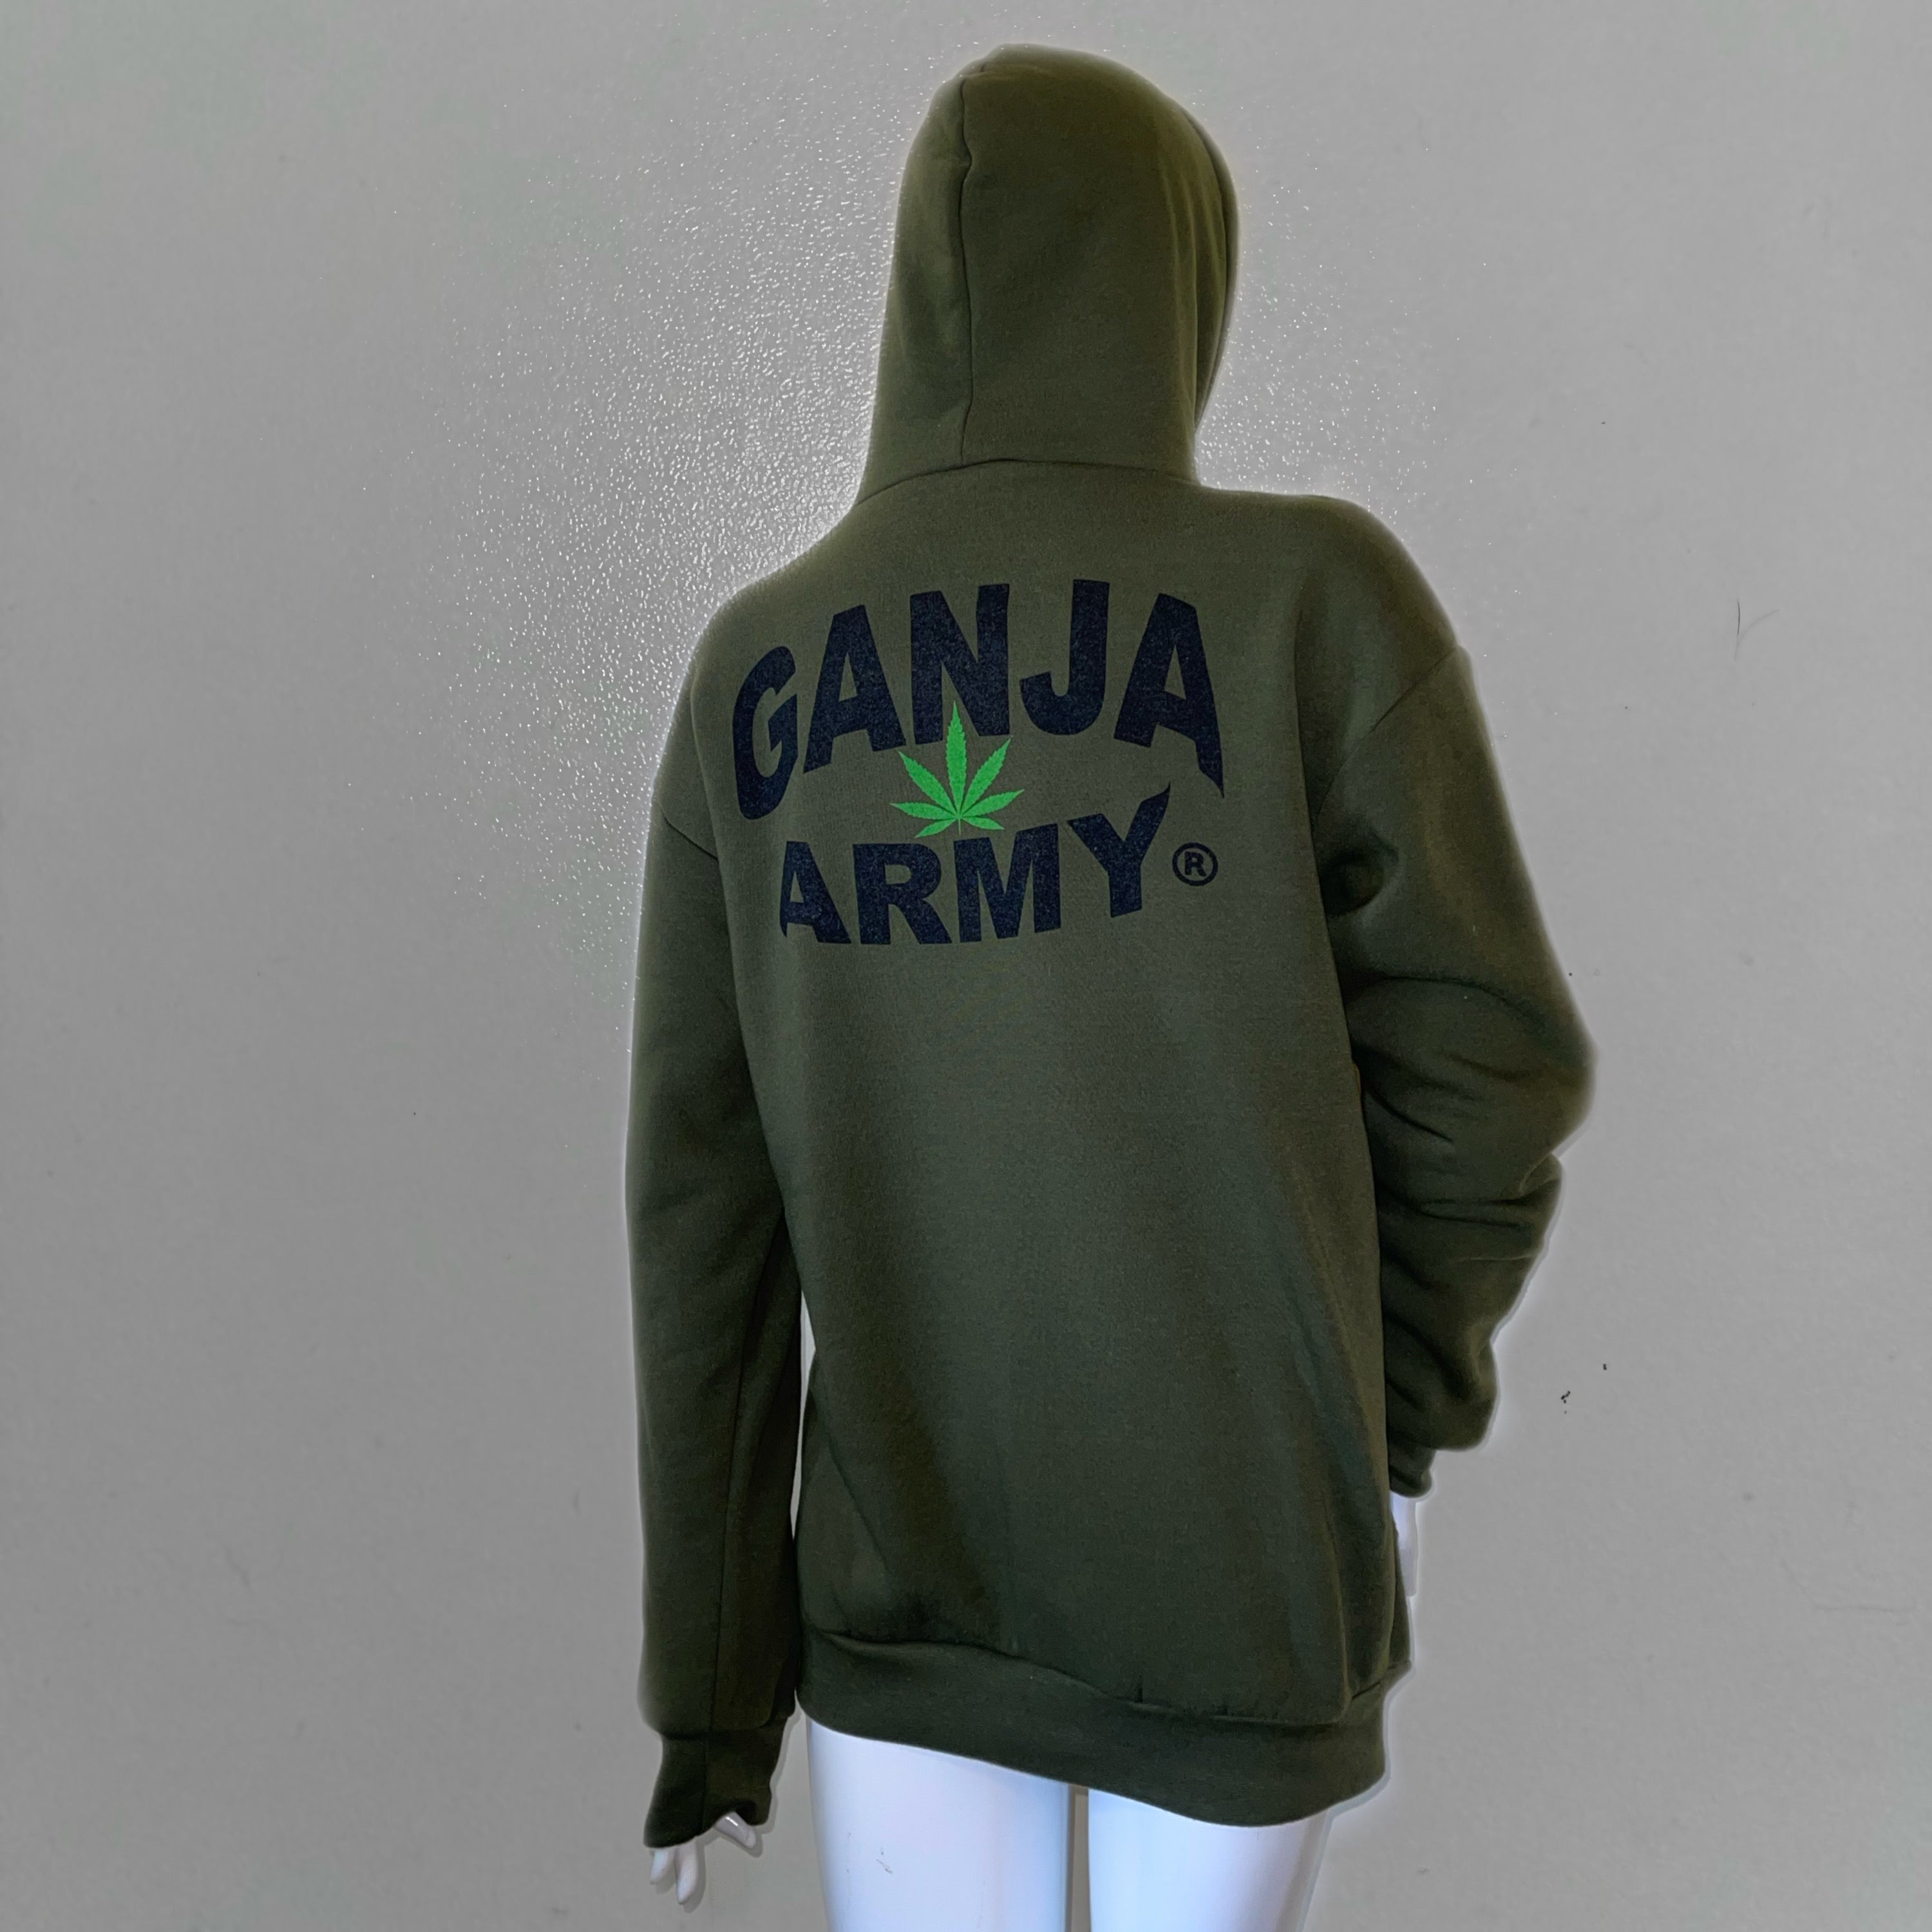 Ganja Army® Hoodies